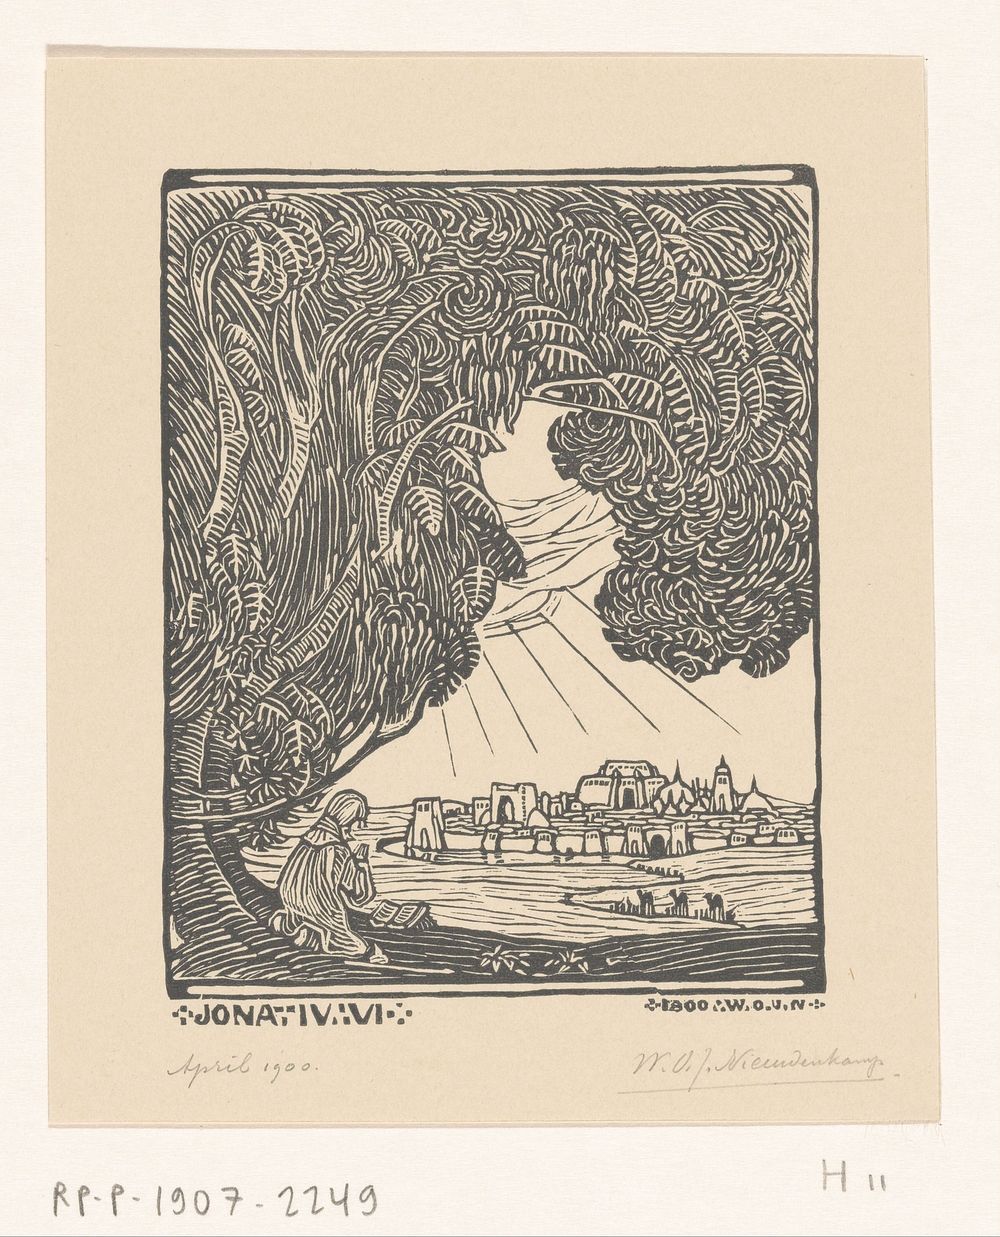 Jona zit onder de wonderboom in de buurt van Nineve (1900) by Wijnand Otto Jan Nieuwenkamp